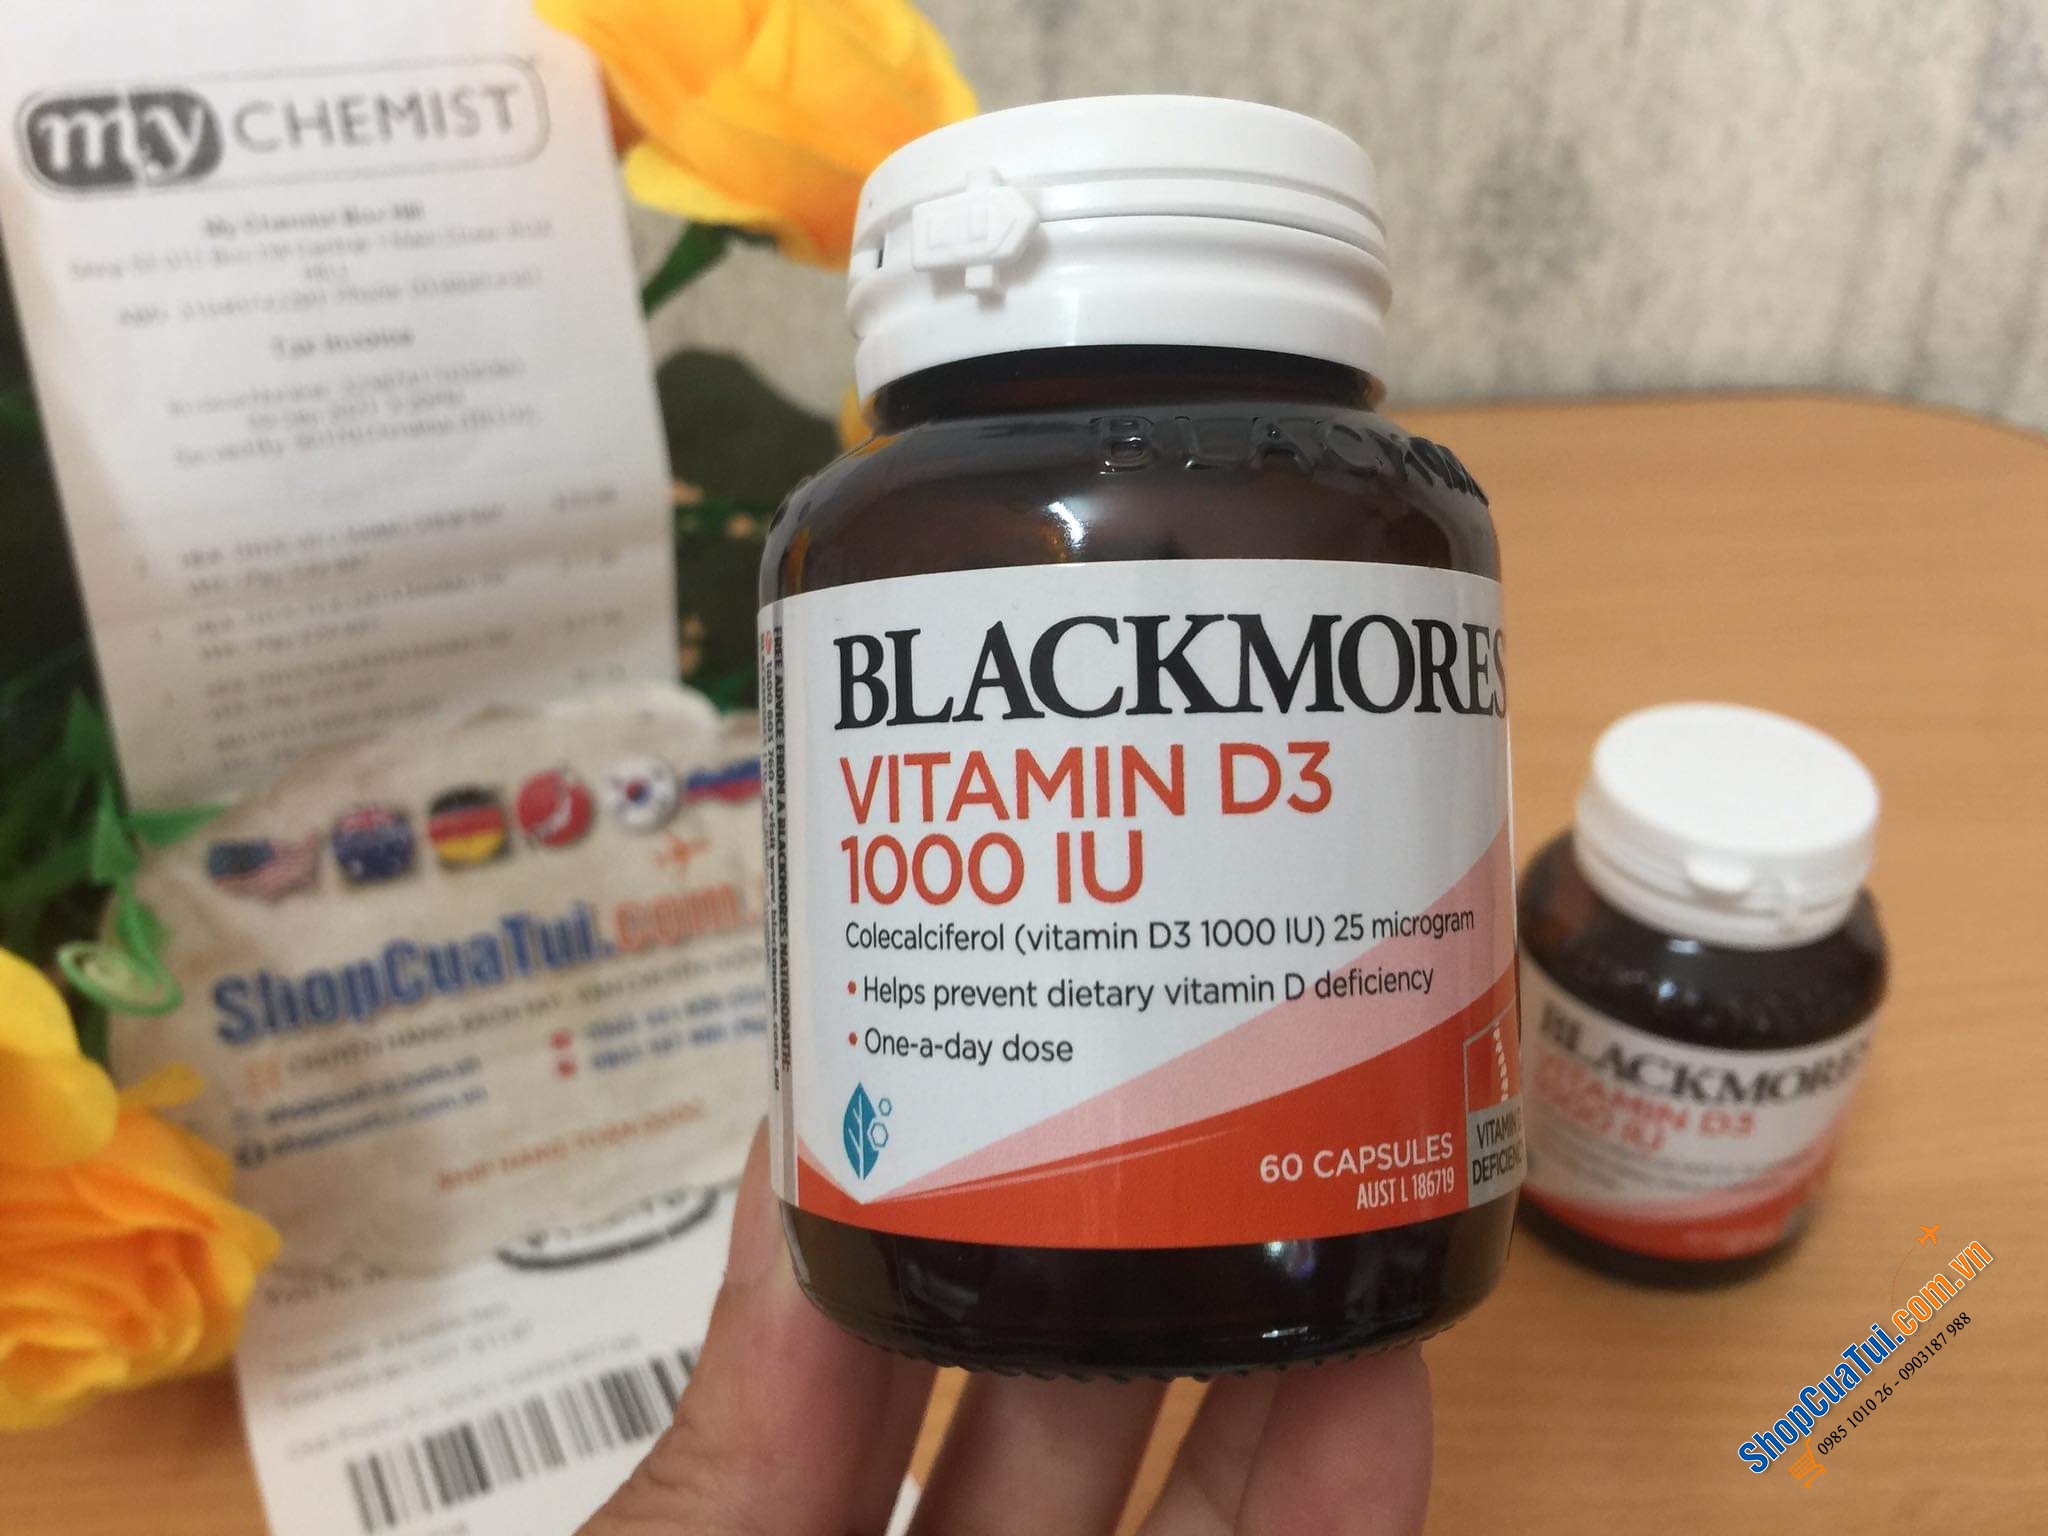 Blackmores Vitamin D3 1000IU 60 Capsules - hỗ trợ duy trì xương khỏe mạnh, cải thiện sức mạnh cơ bắp